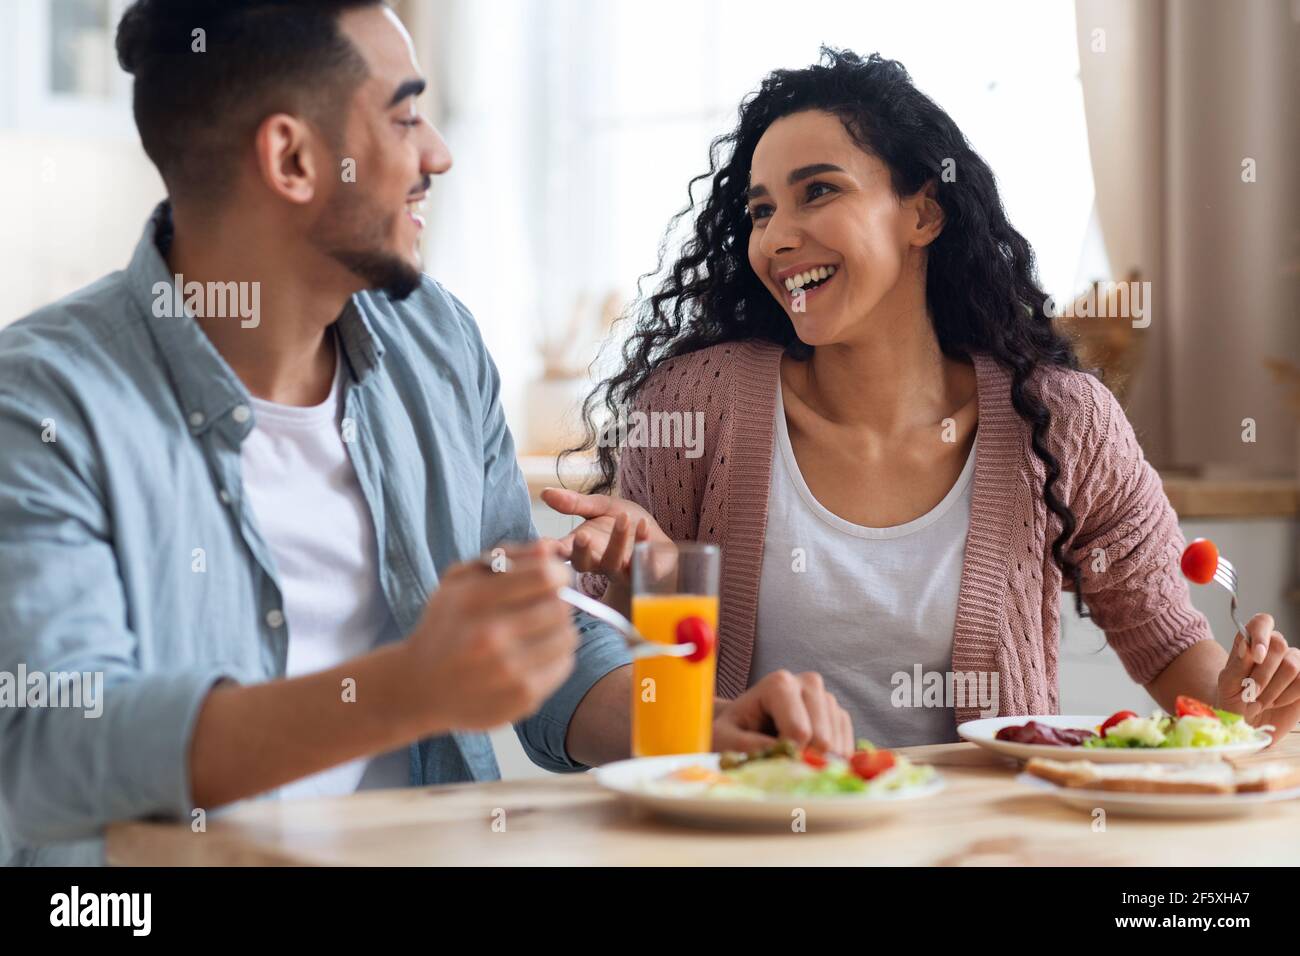 Abendessen Am Morgen. Romantisches Arabisches Paar Frühstück Essen, Plaudern Und Lachen In Der Küche Stockfoto